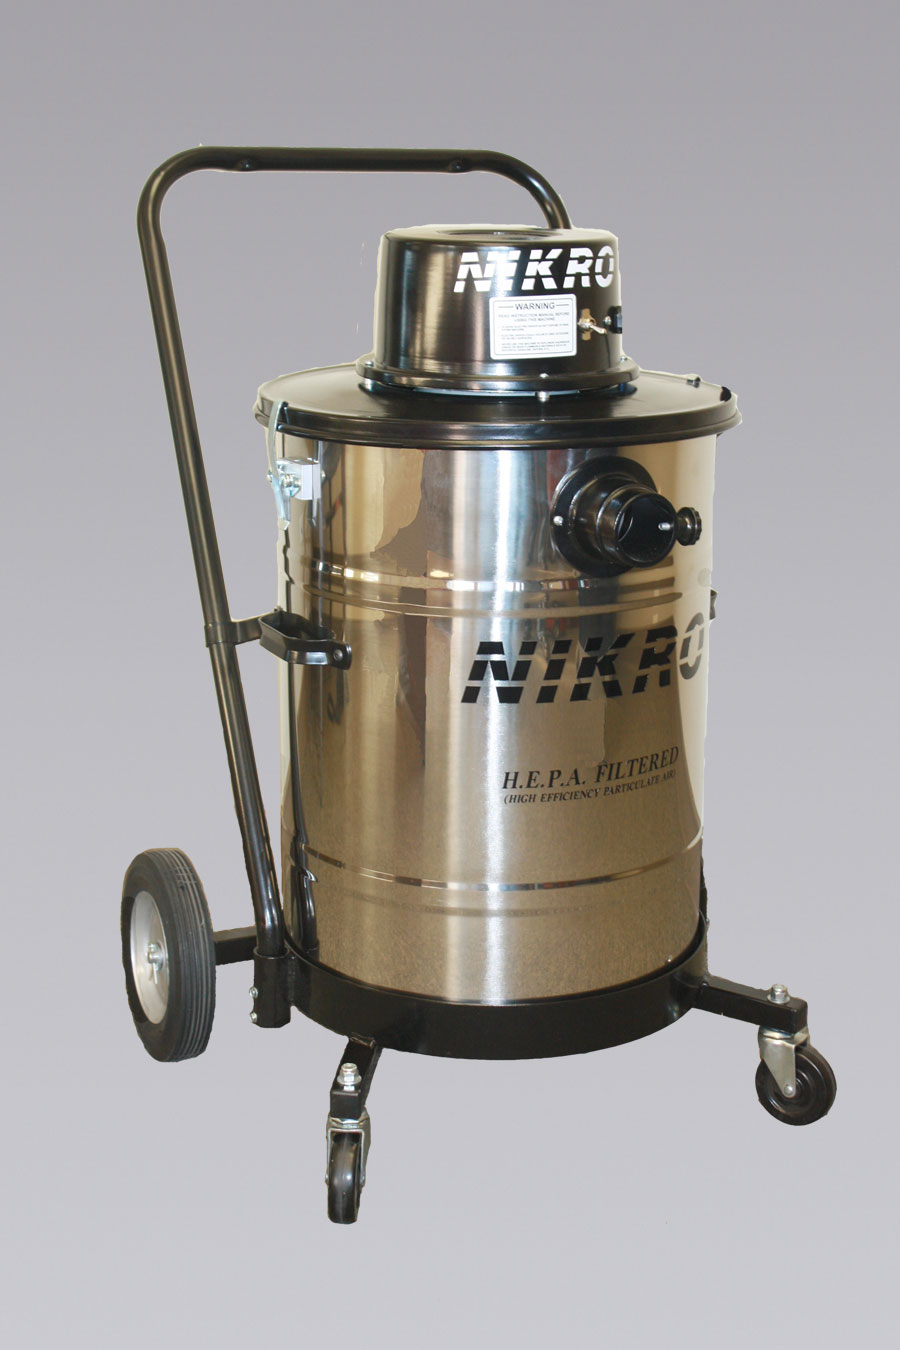 HD15110-S - 15 Gallon Stainless Steel HEPA Vacuum (Dry) - NIKRO Industries, Inc.